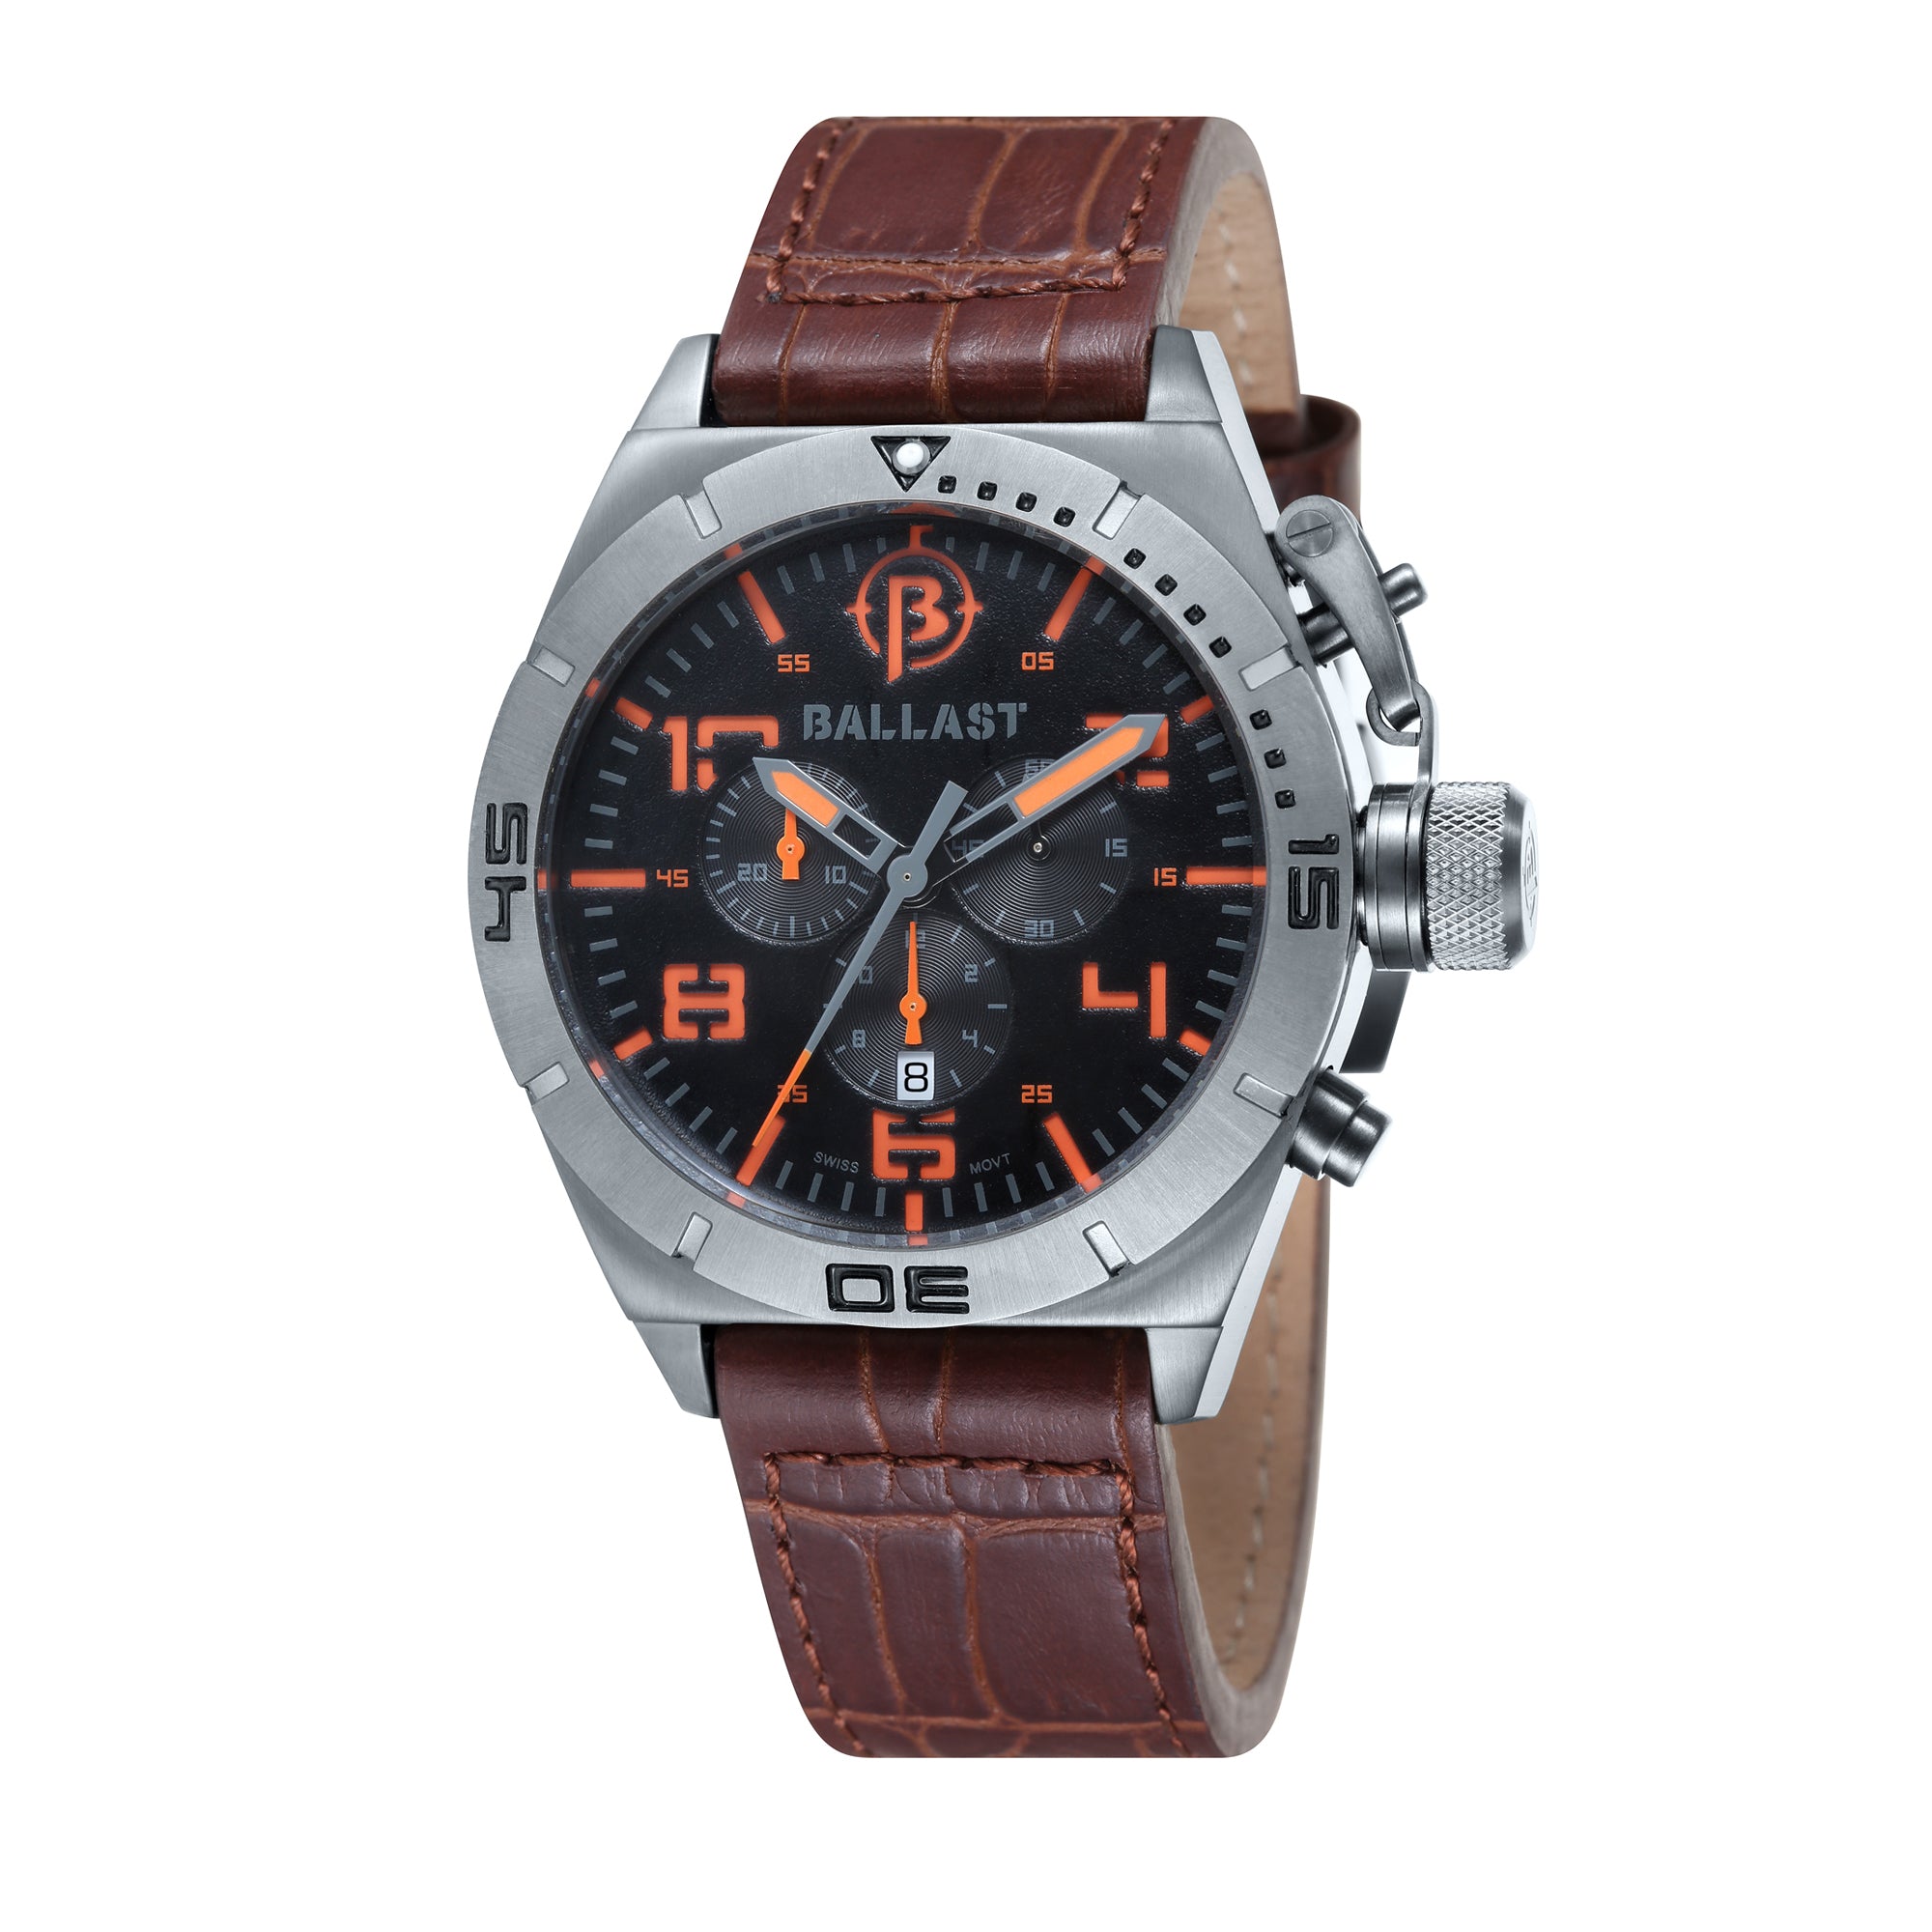 BALLAST Ballast Men's Amphion Quartz Watch with a Brown Genuine Leather Strap - BL-3121-04